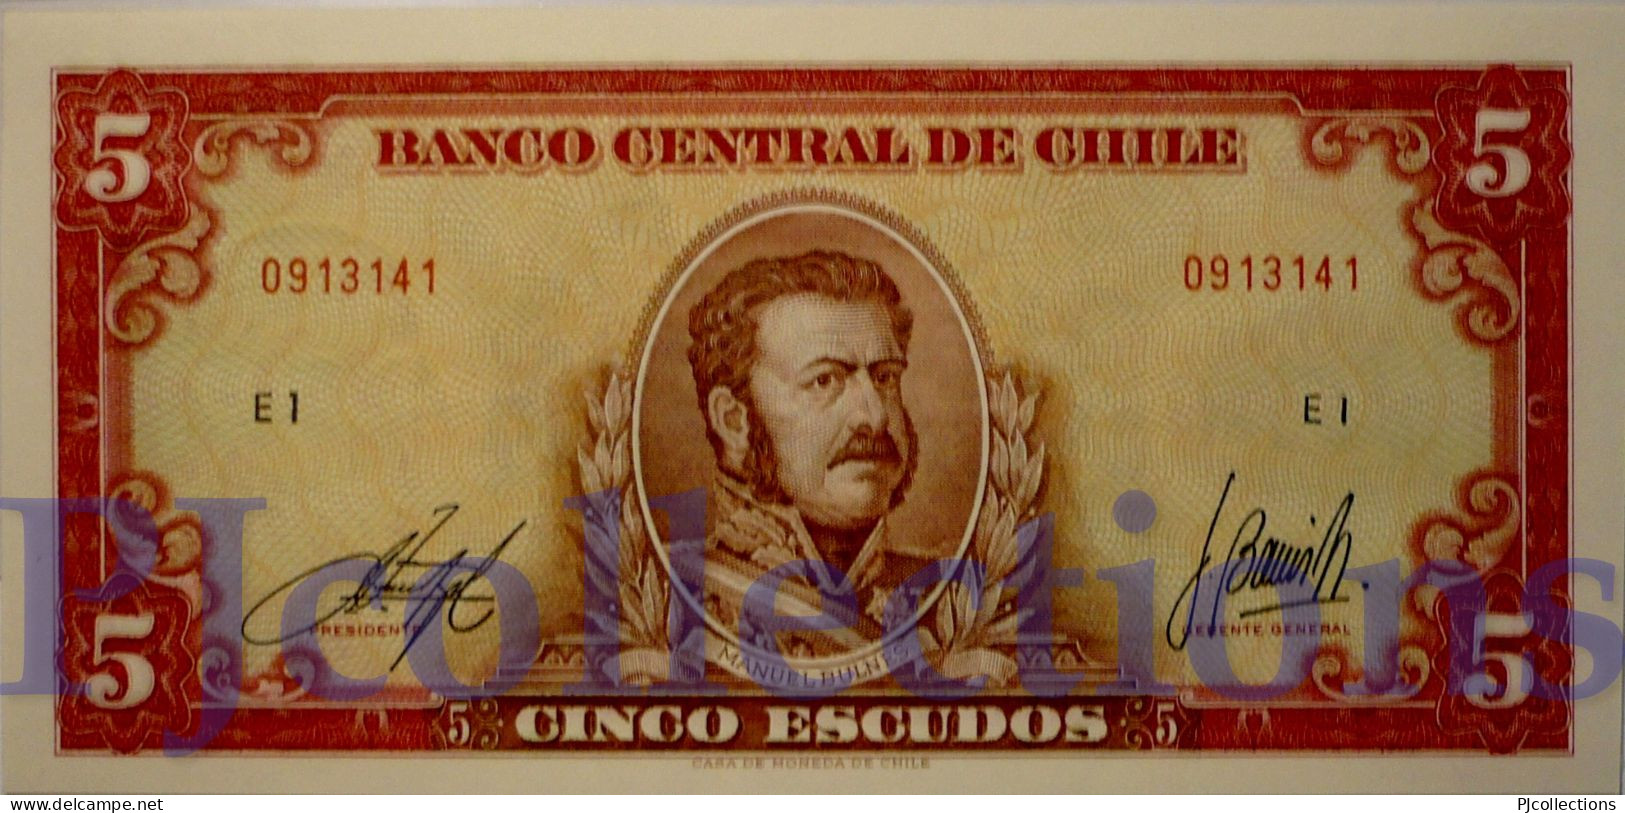 CHILE 5 ESCUDOS 1964 PICK 138 UNC - Chile